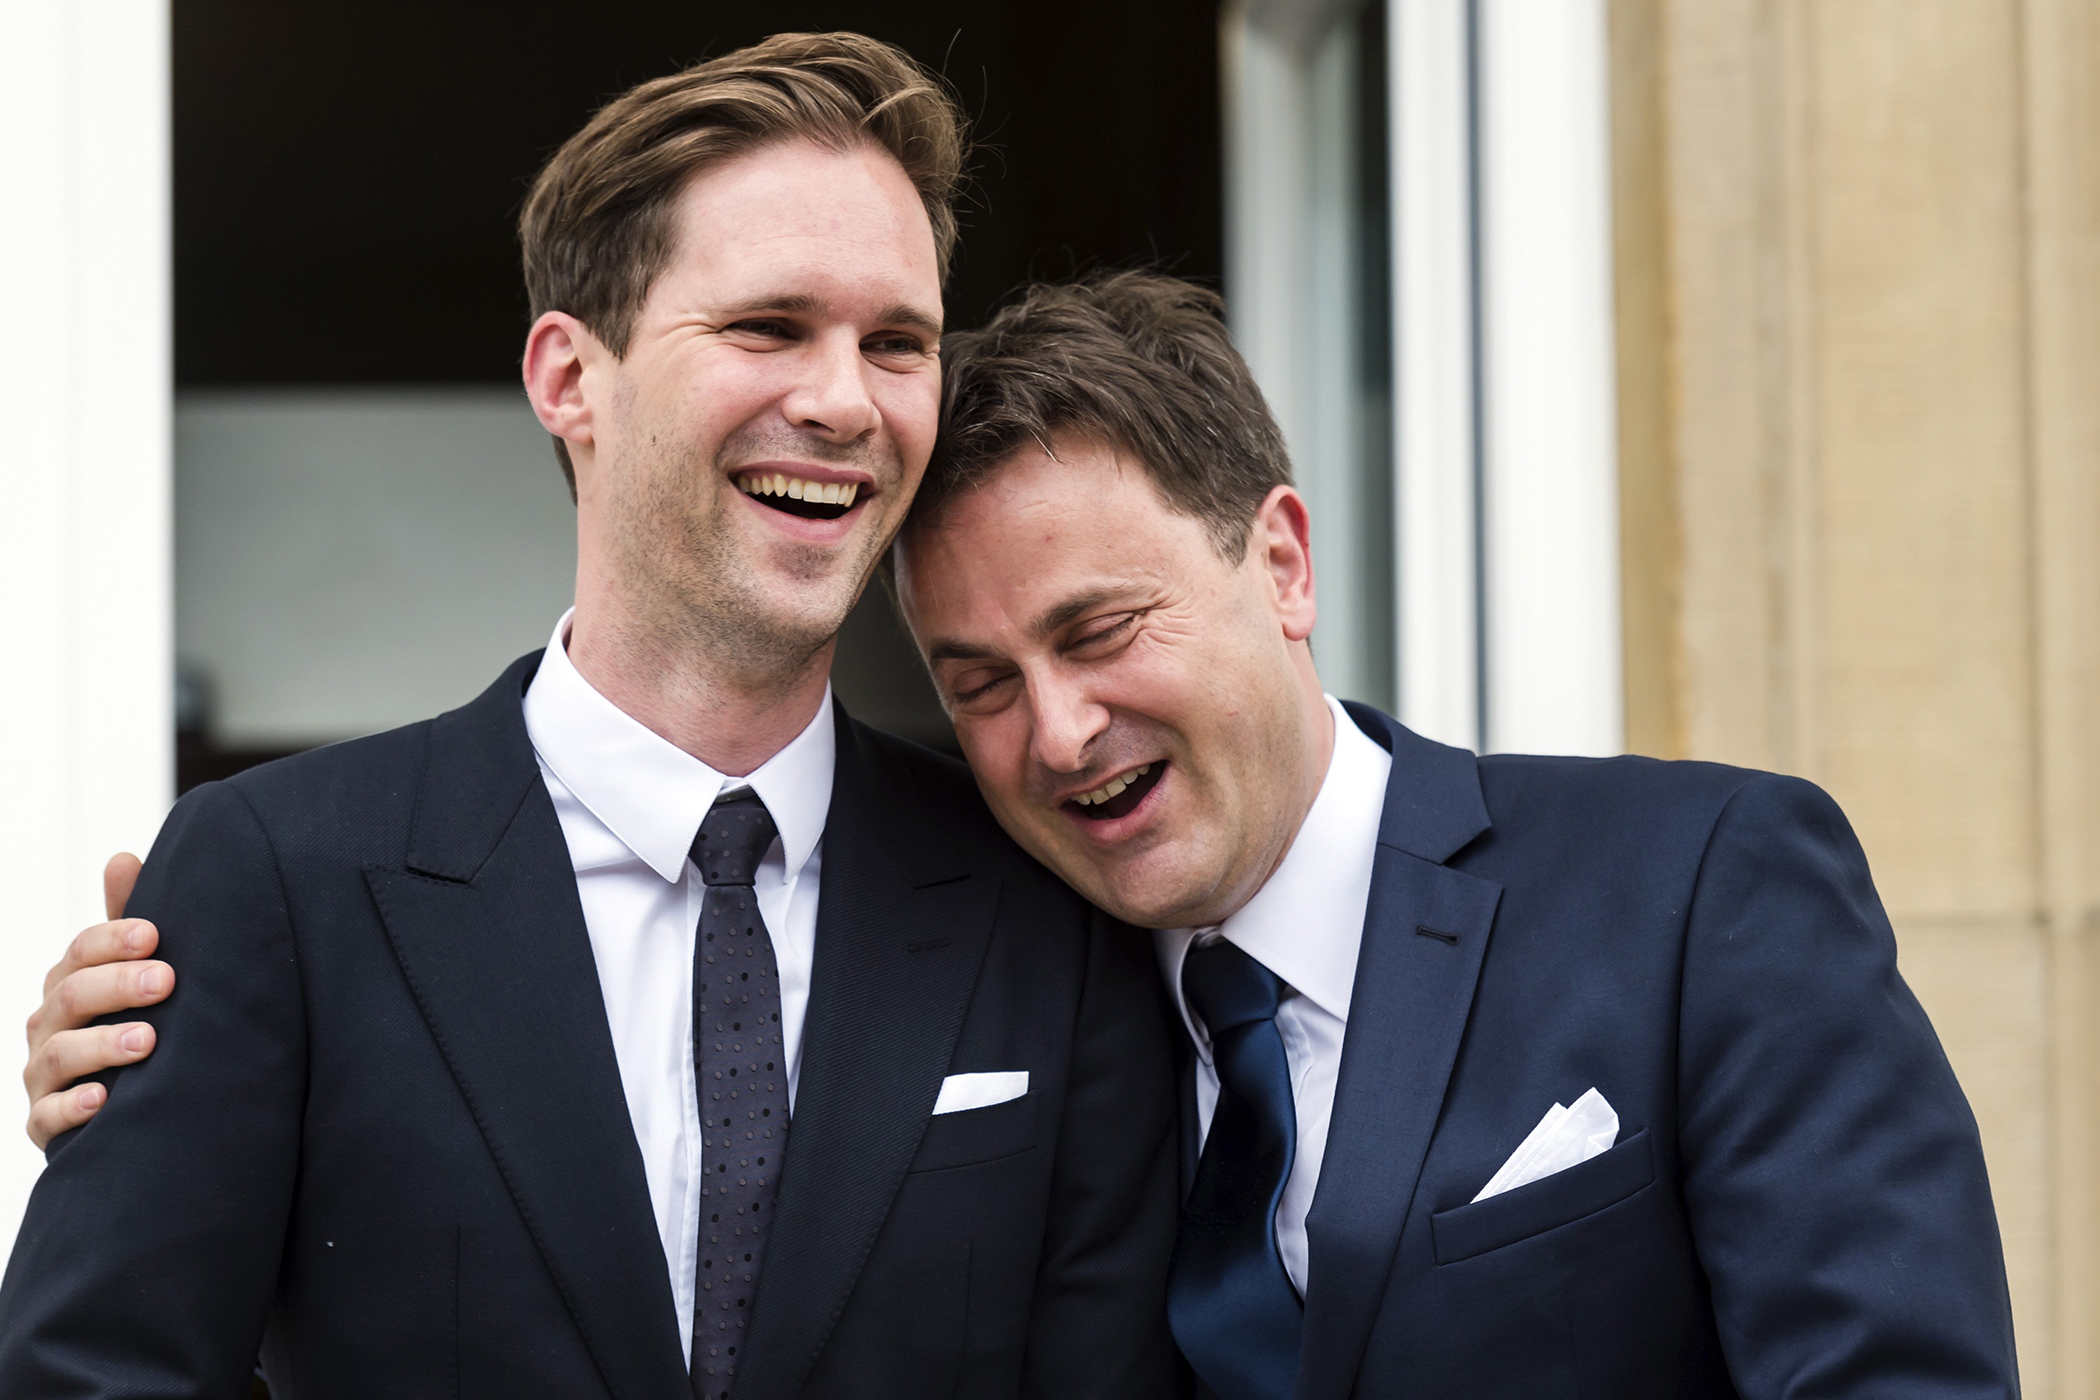 Luxembourg Prime Minister Xavier Bettel marries same-sex partner